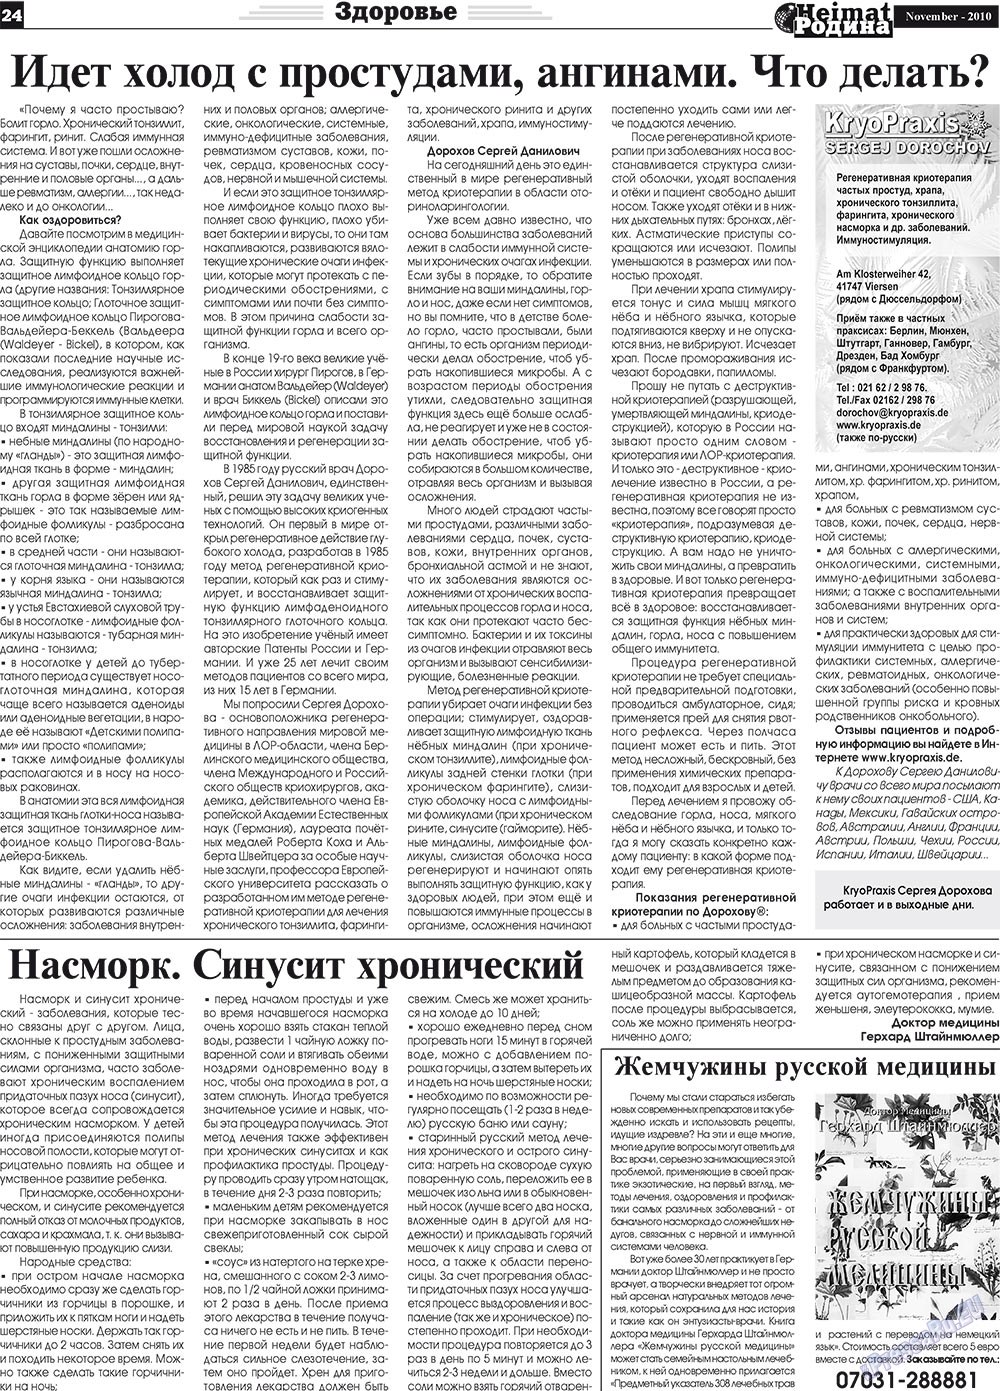 Heimat-Родина (газета). 2010 год, номер 11, стр. 24